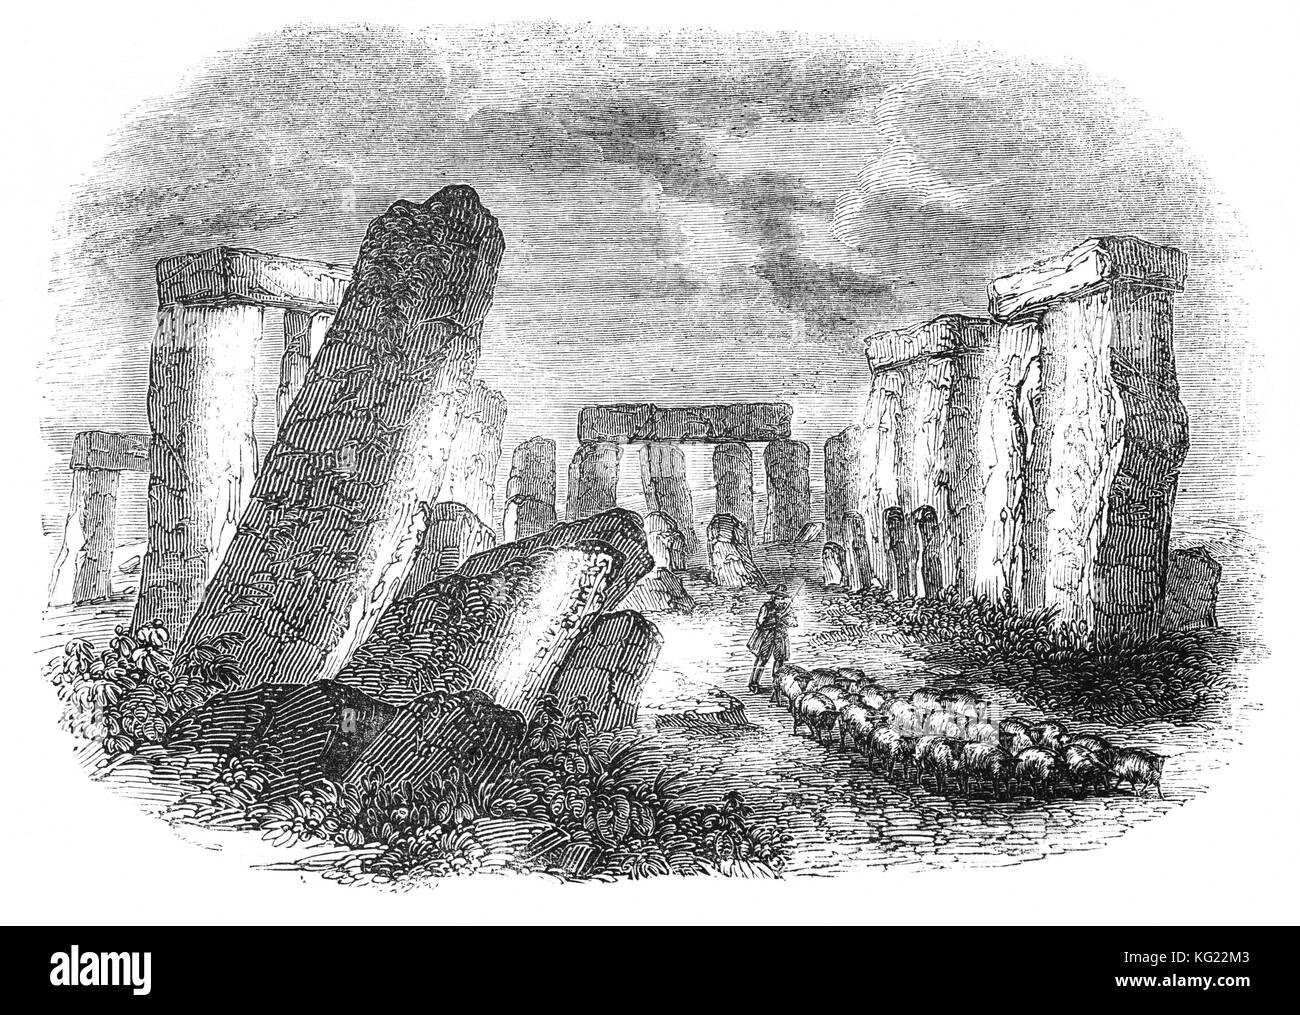 El pastor y las ovejas en Stonehenge, un prehistórico monumento neolítico y la Edad de Bronce en Wiltshire, Inglaterra, que consta de un anillo de piedras y construidos a partir de 3000 A.C. a 2000 BC. Popularmente se cree que tienen un fuerte connevction con el culto de los druidas. Foto de stock